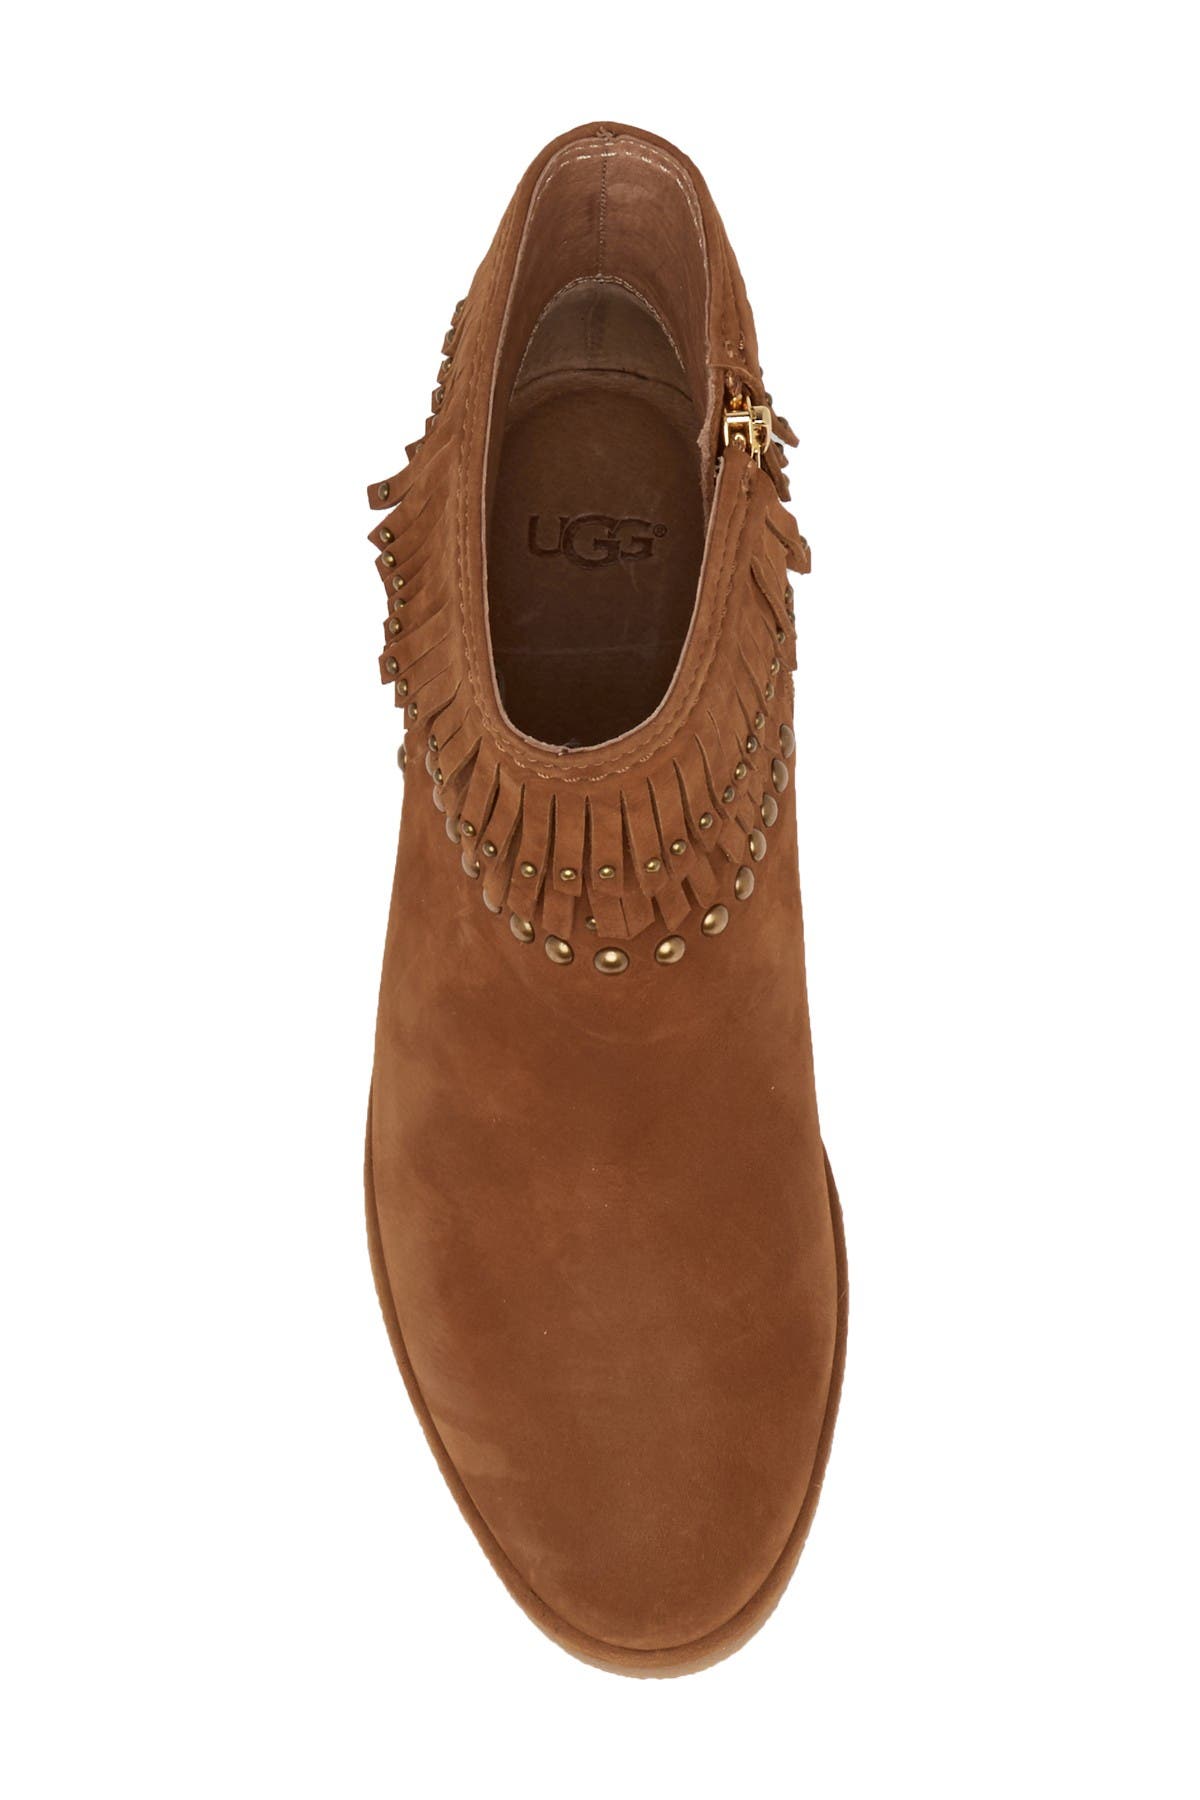 UGG | Adriana Wedge Fringe Leather Boot 